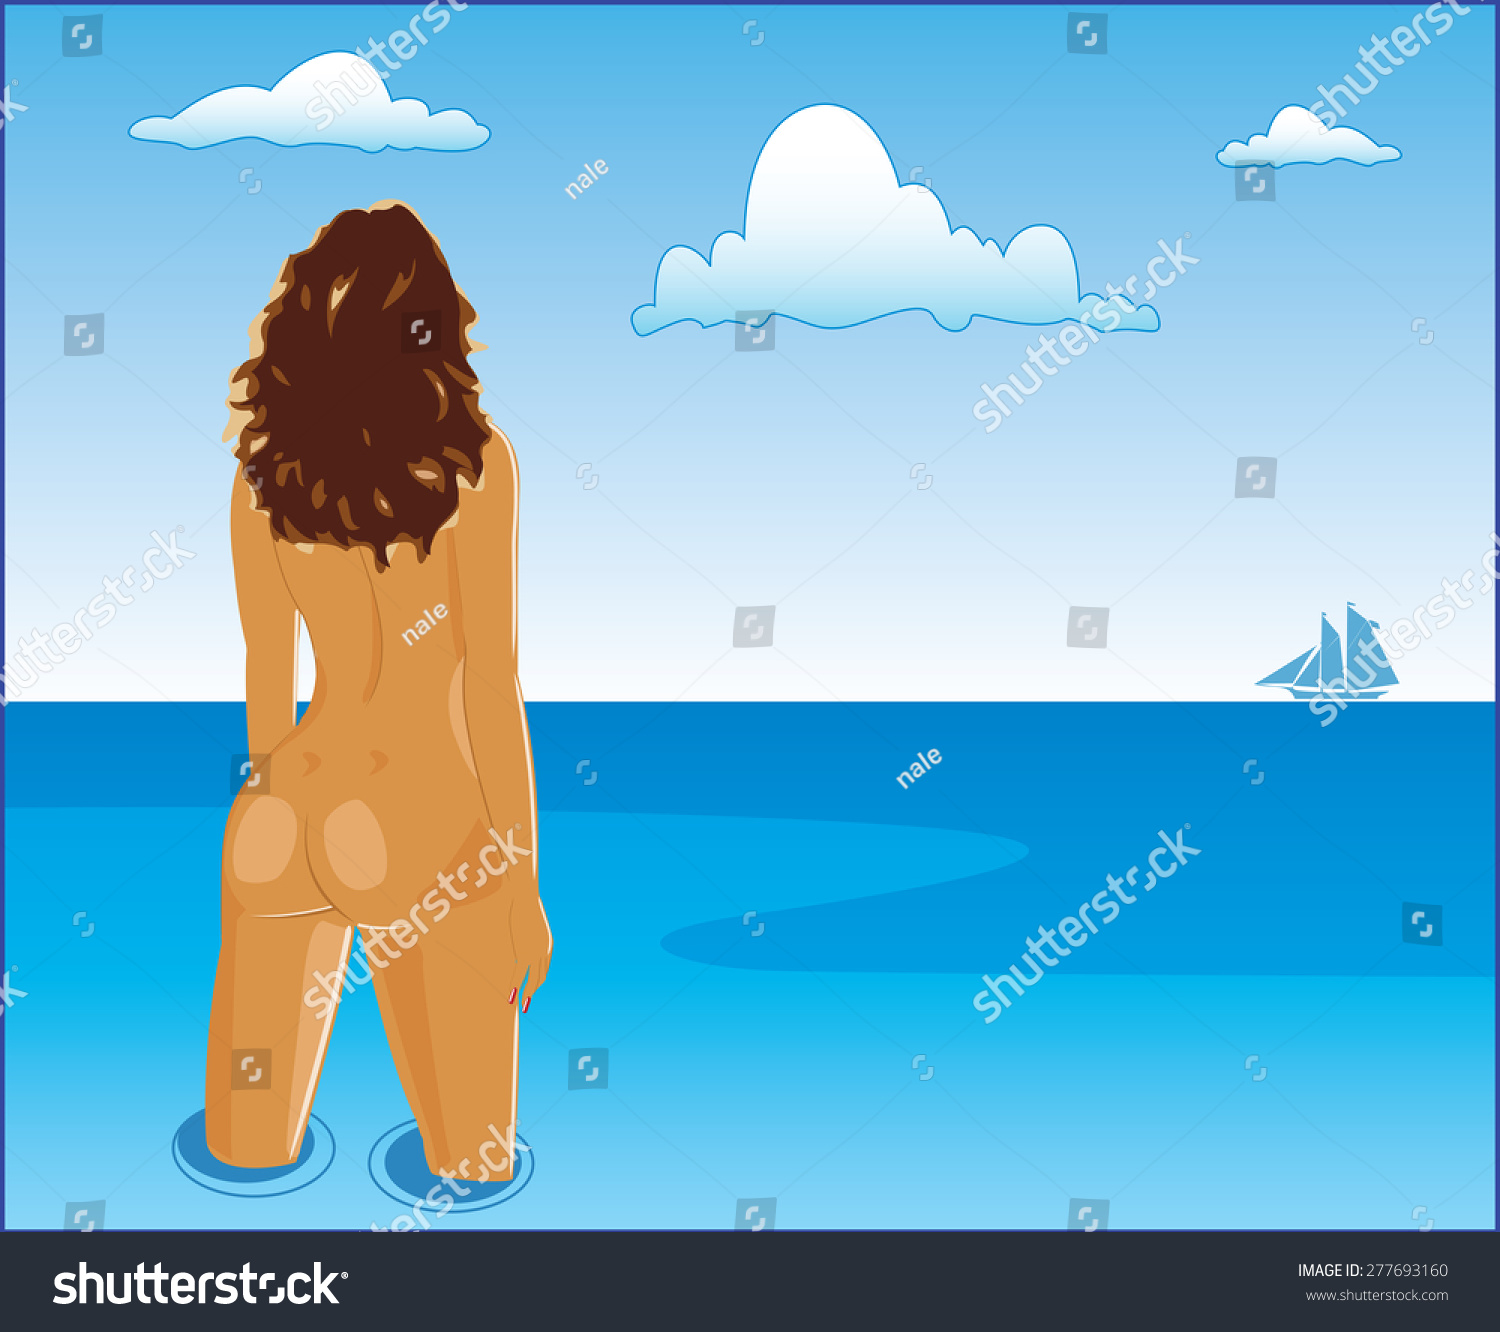 Nude Girl On Beach